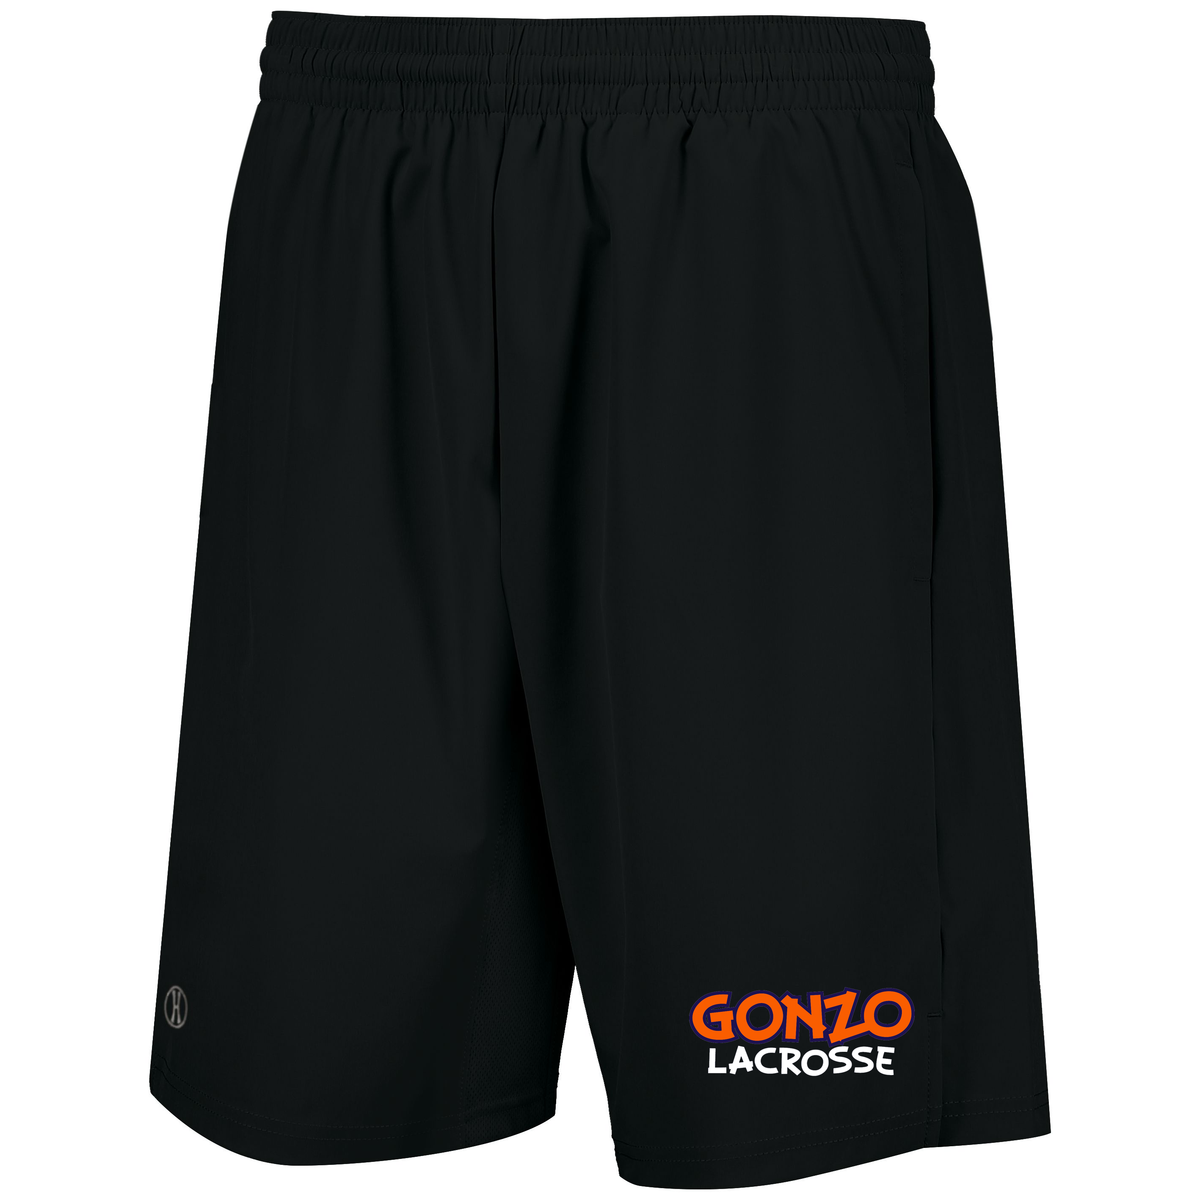 Gonzo Lacrosse Men's Weld Shorts